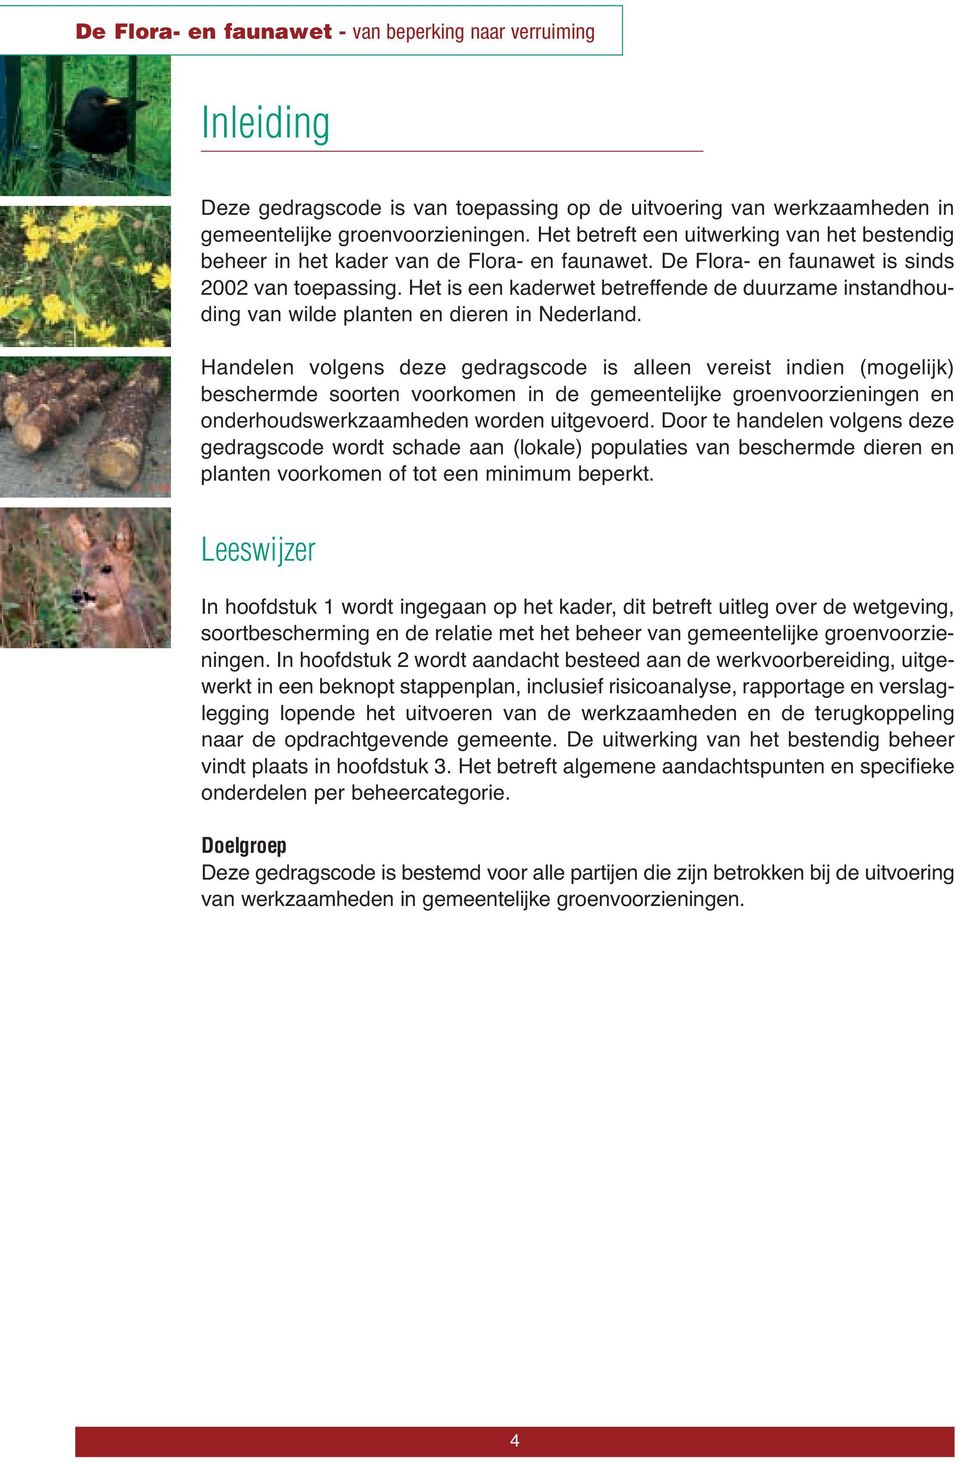 Het is een kaderwet betreffende de duurzame instandhouding van wilde planten en dieren in Nederland.